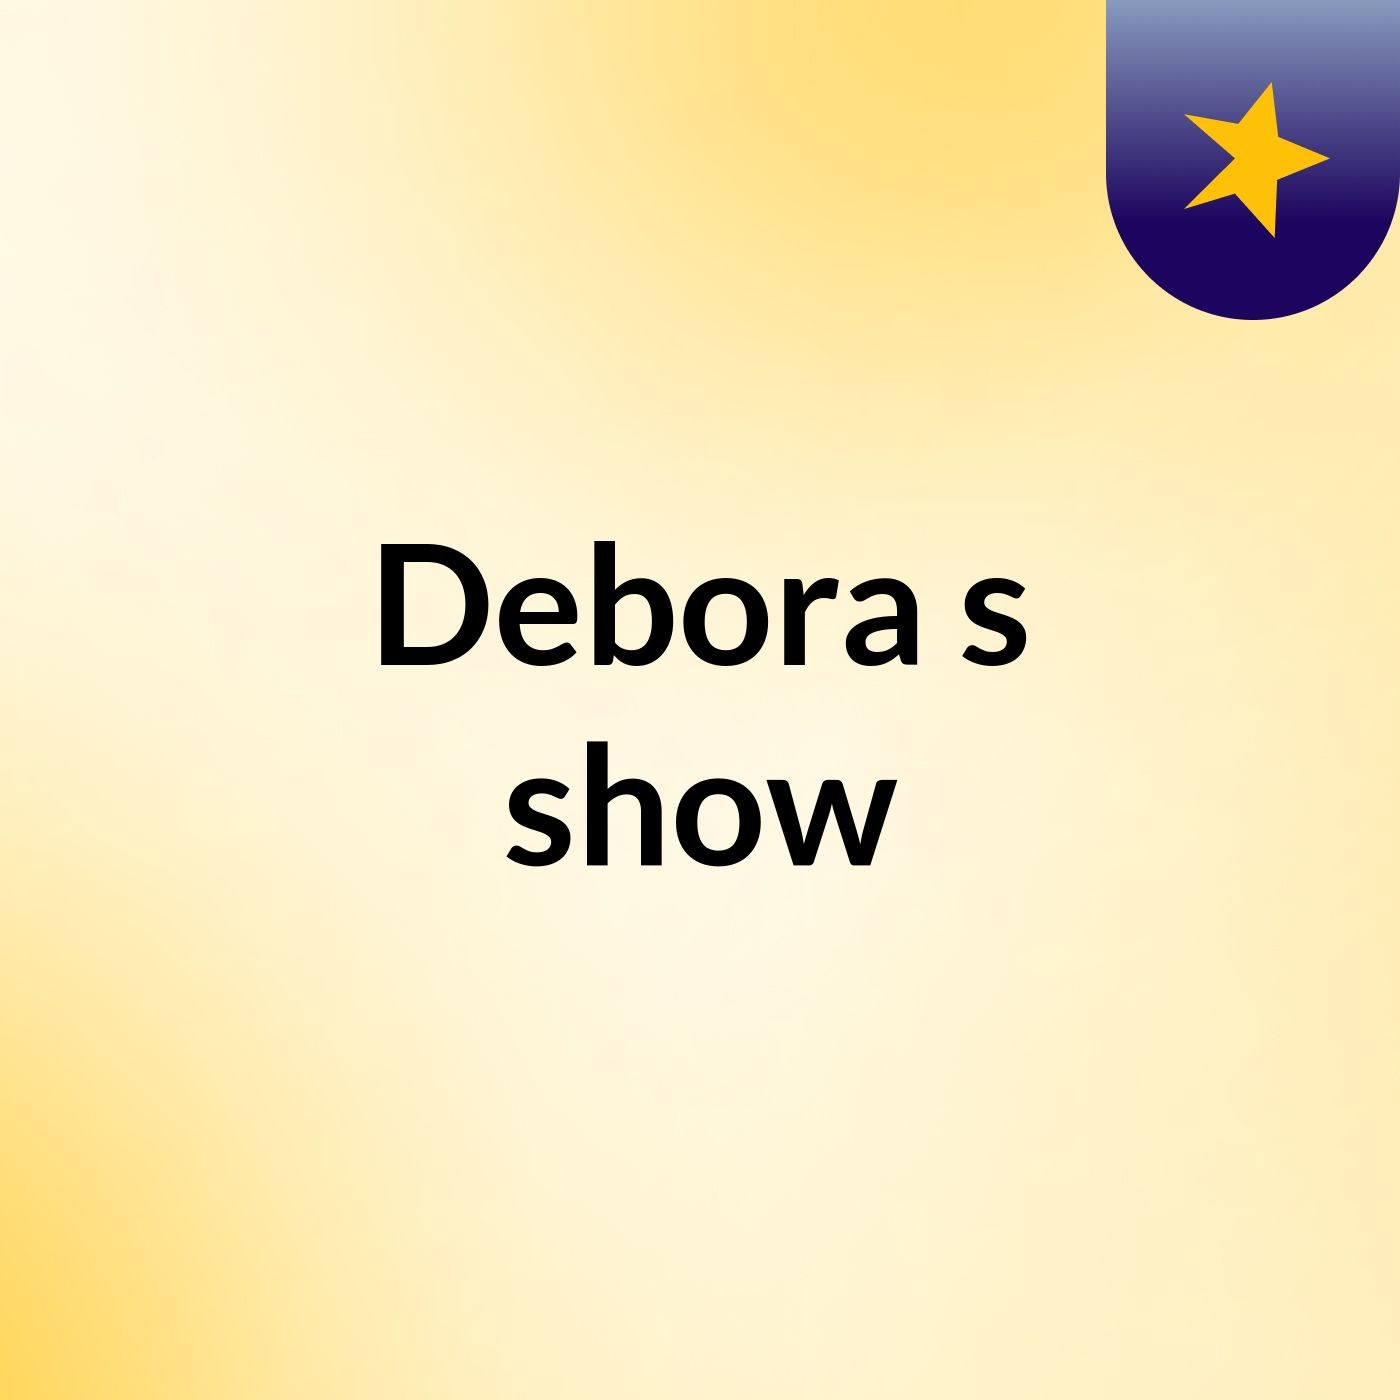 Debora's show